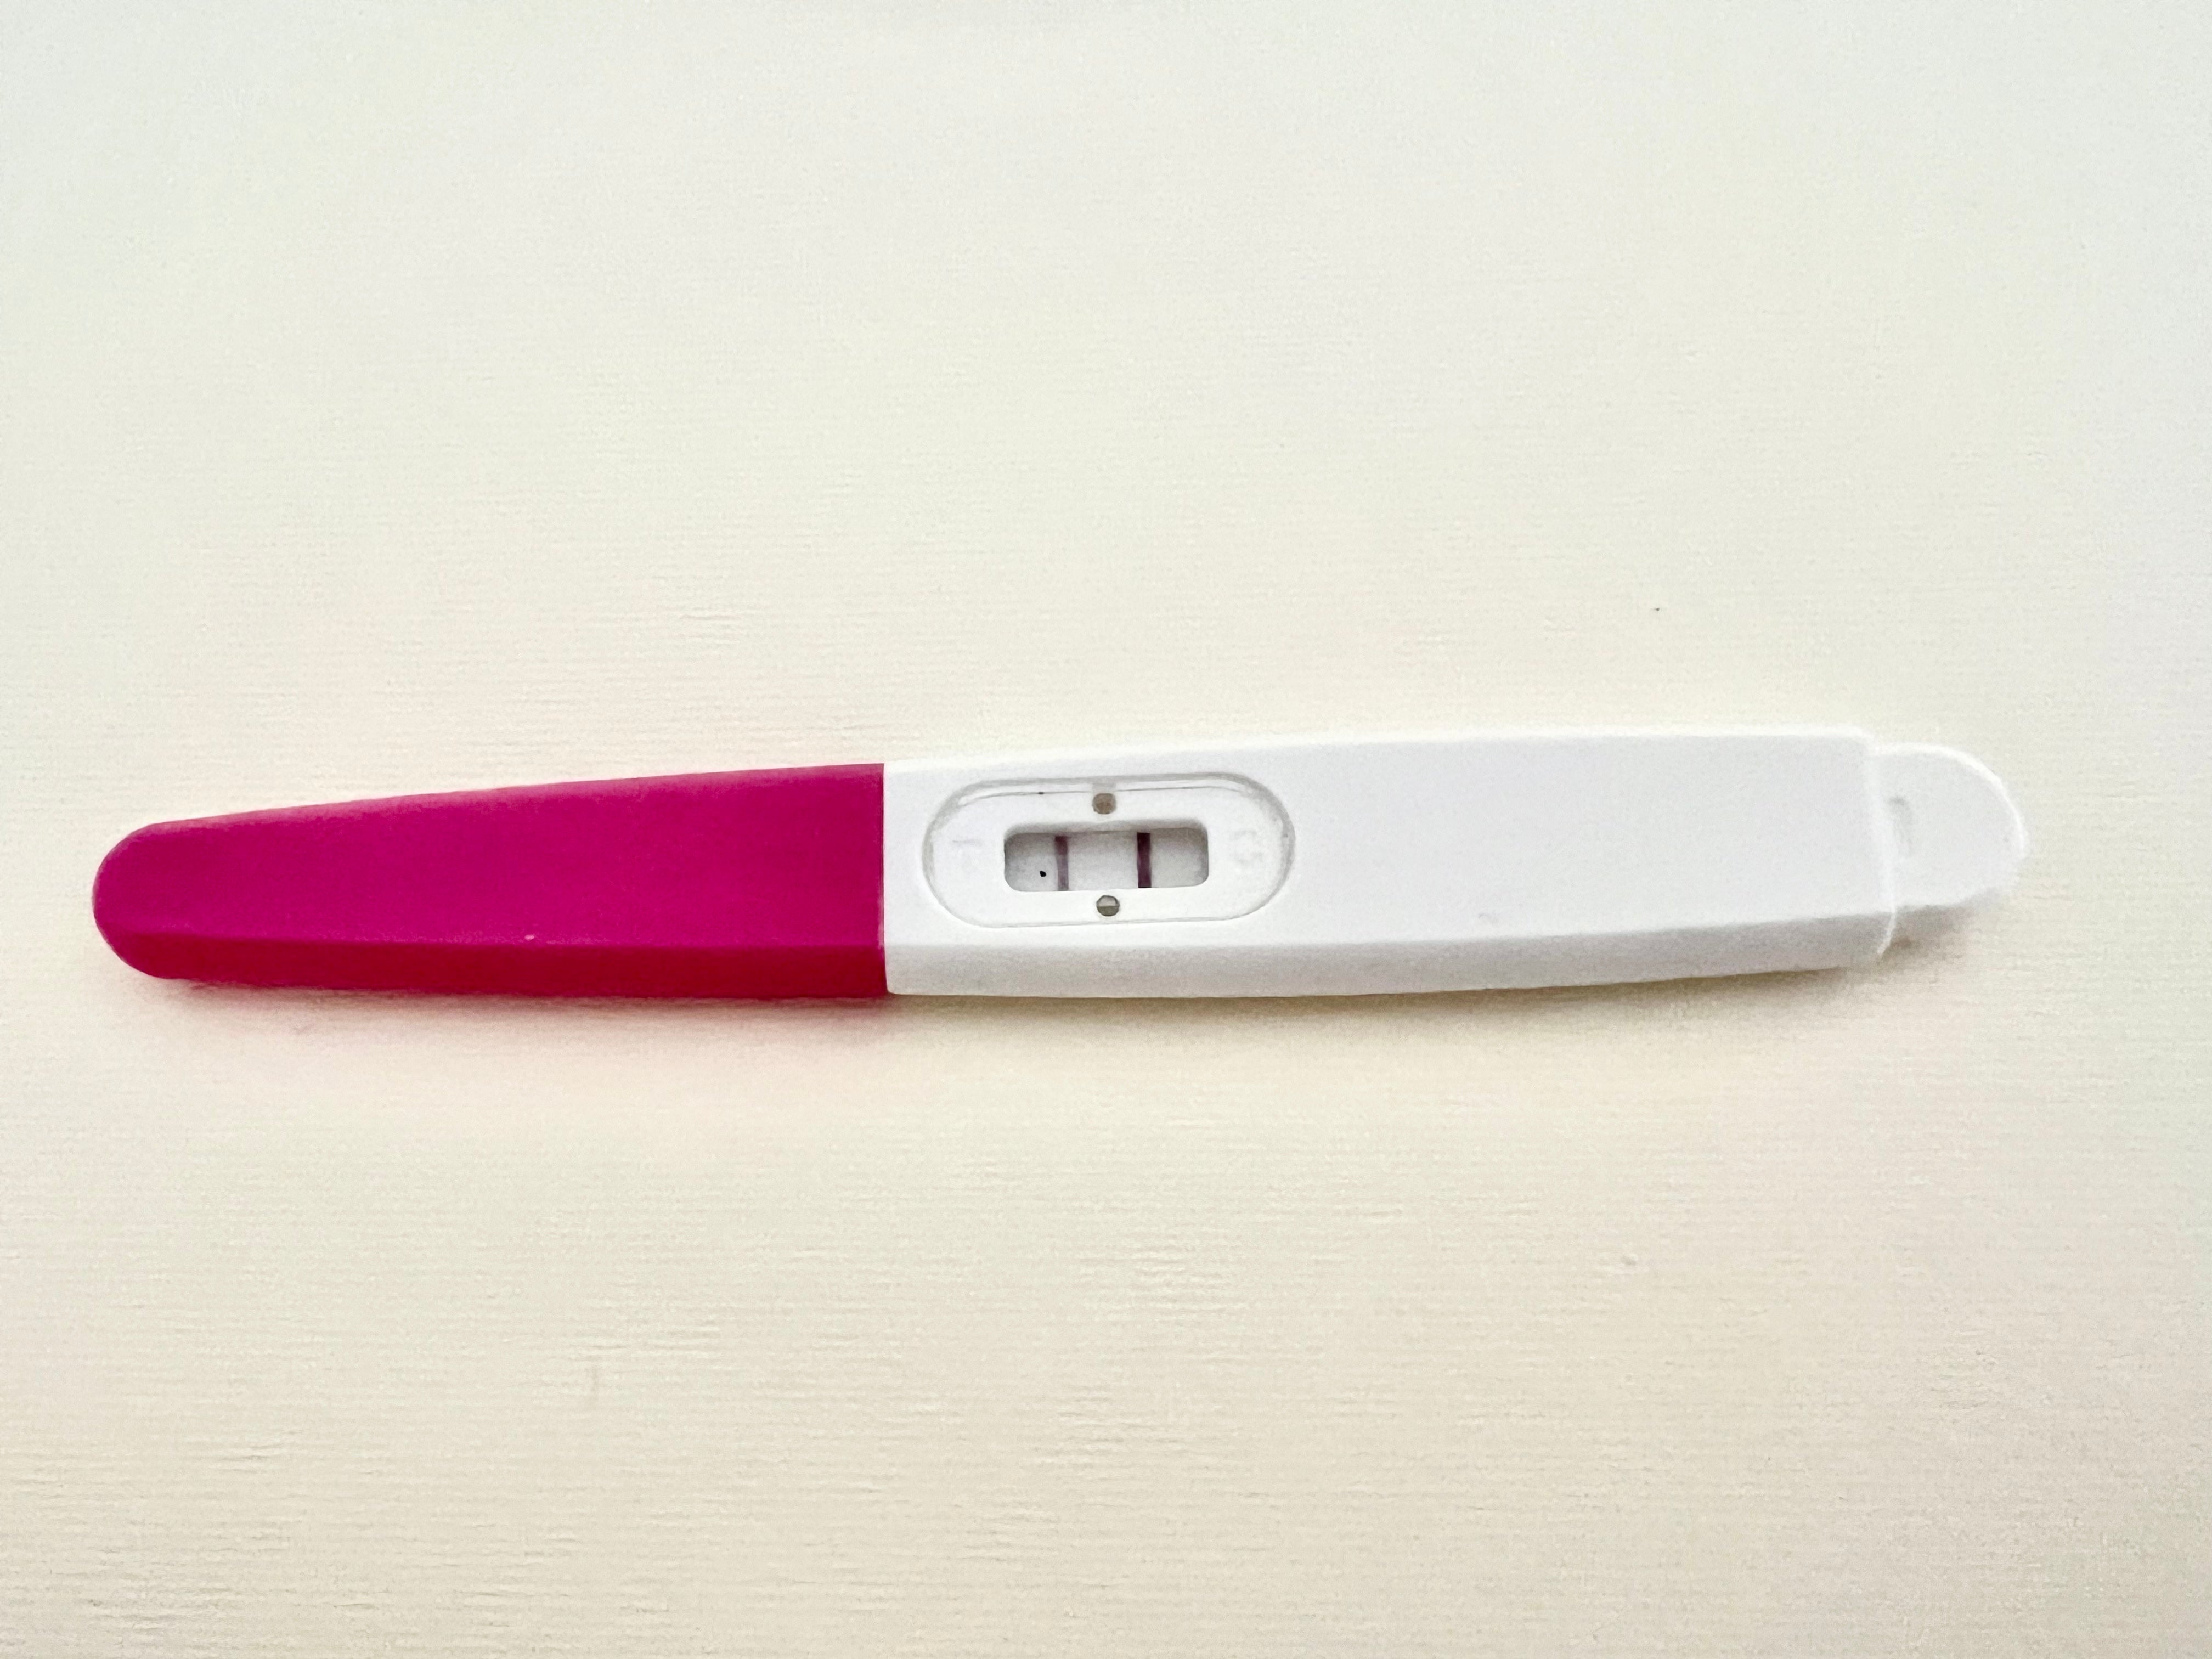 Regnjakke fup katolsk Gravidtid Early Pregnancy Test Stick 3 pcs.